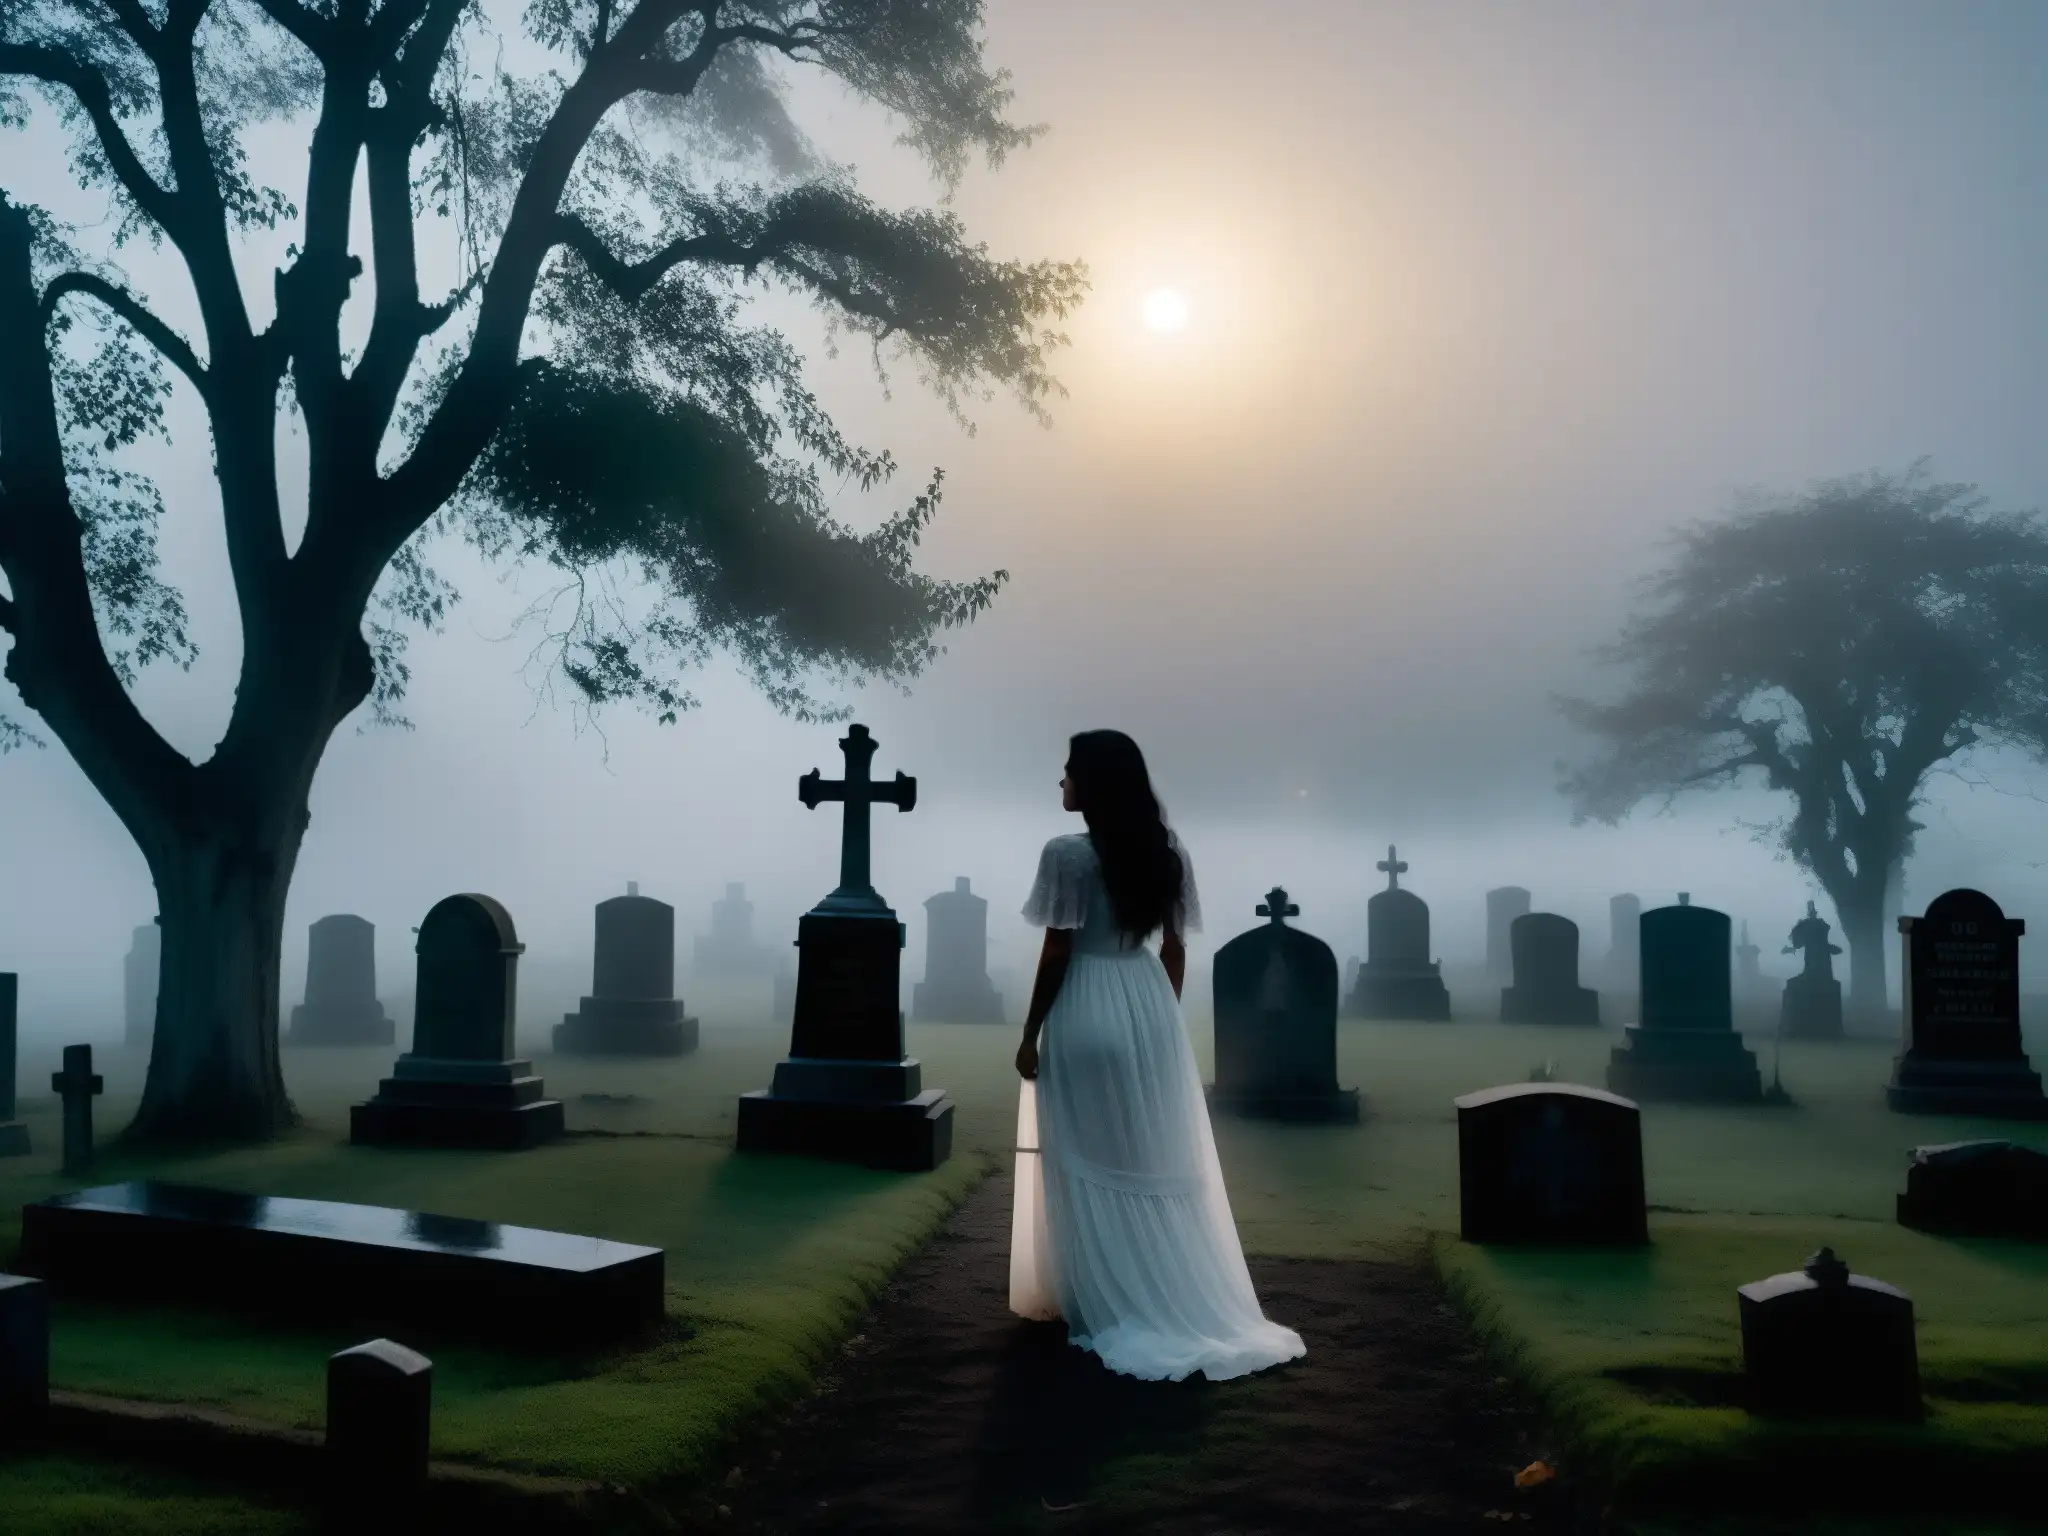 Una imagen nocturna de un cementerio cubierto de neblina, con la inquietante silueta de la 'Dama de Blanco' entre las tumbas